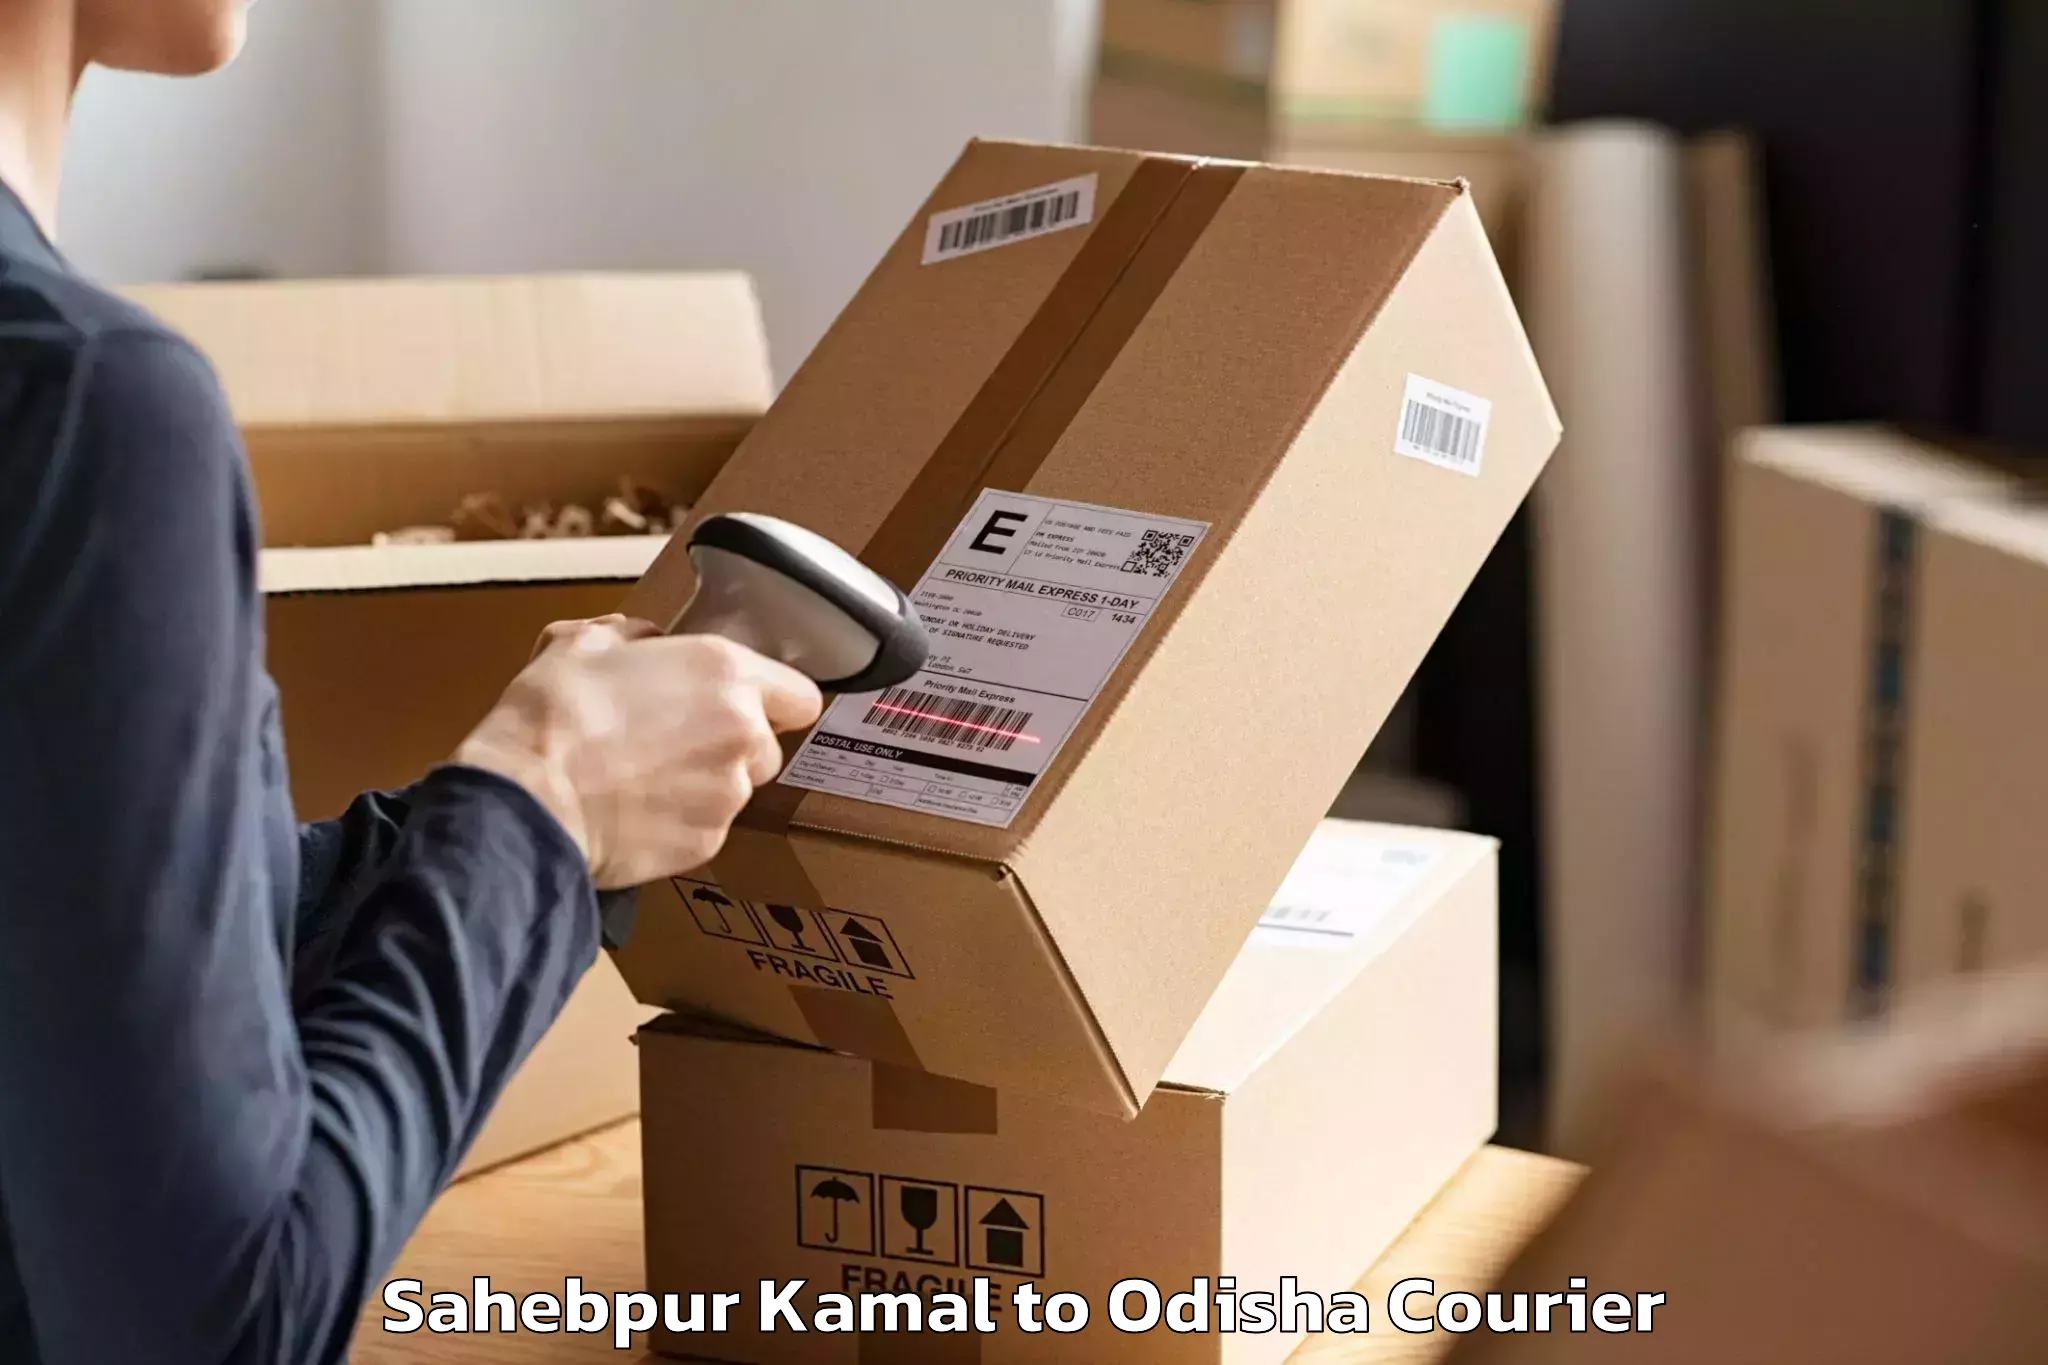 Trusted moving company Sahebpur Kamal to Jashipur